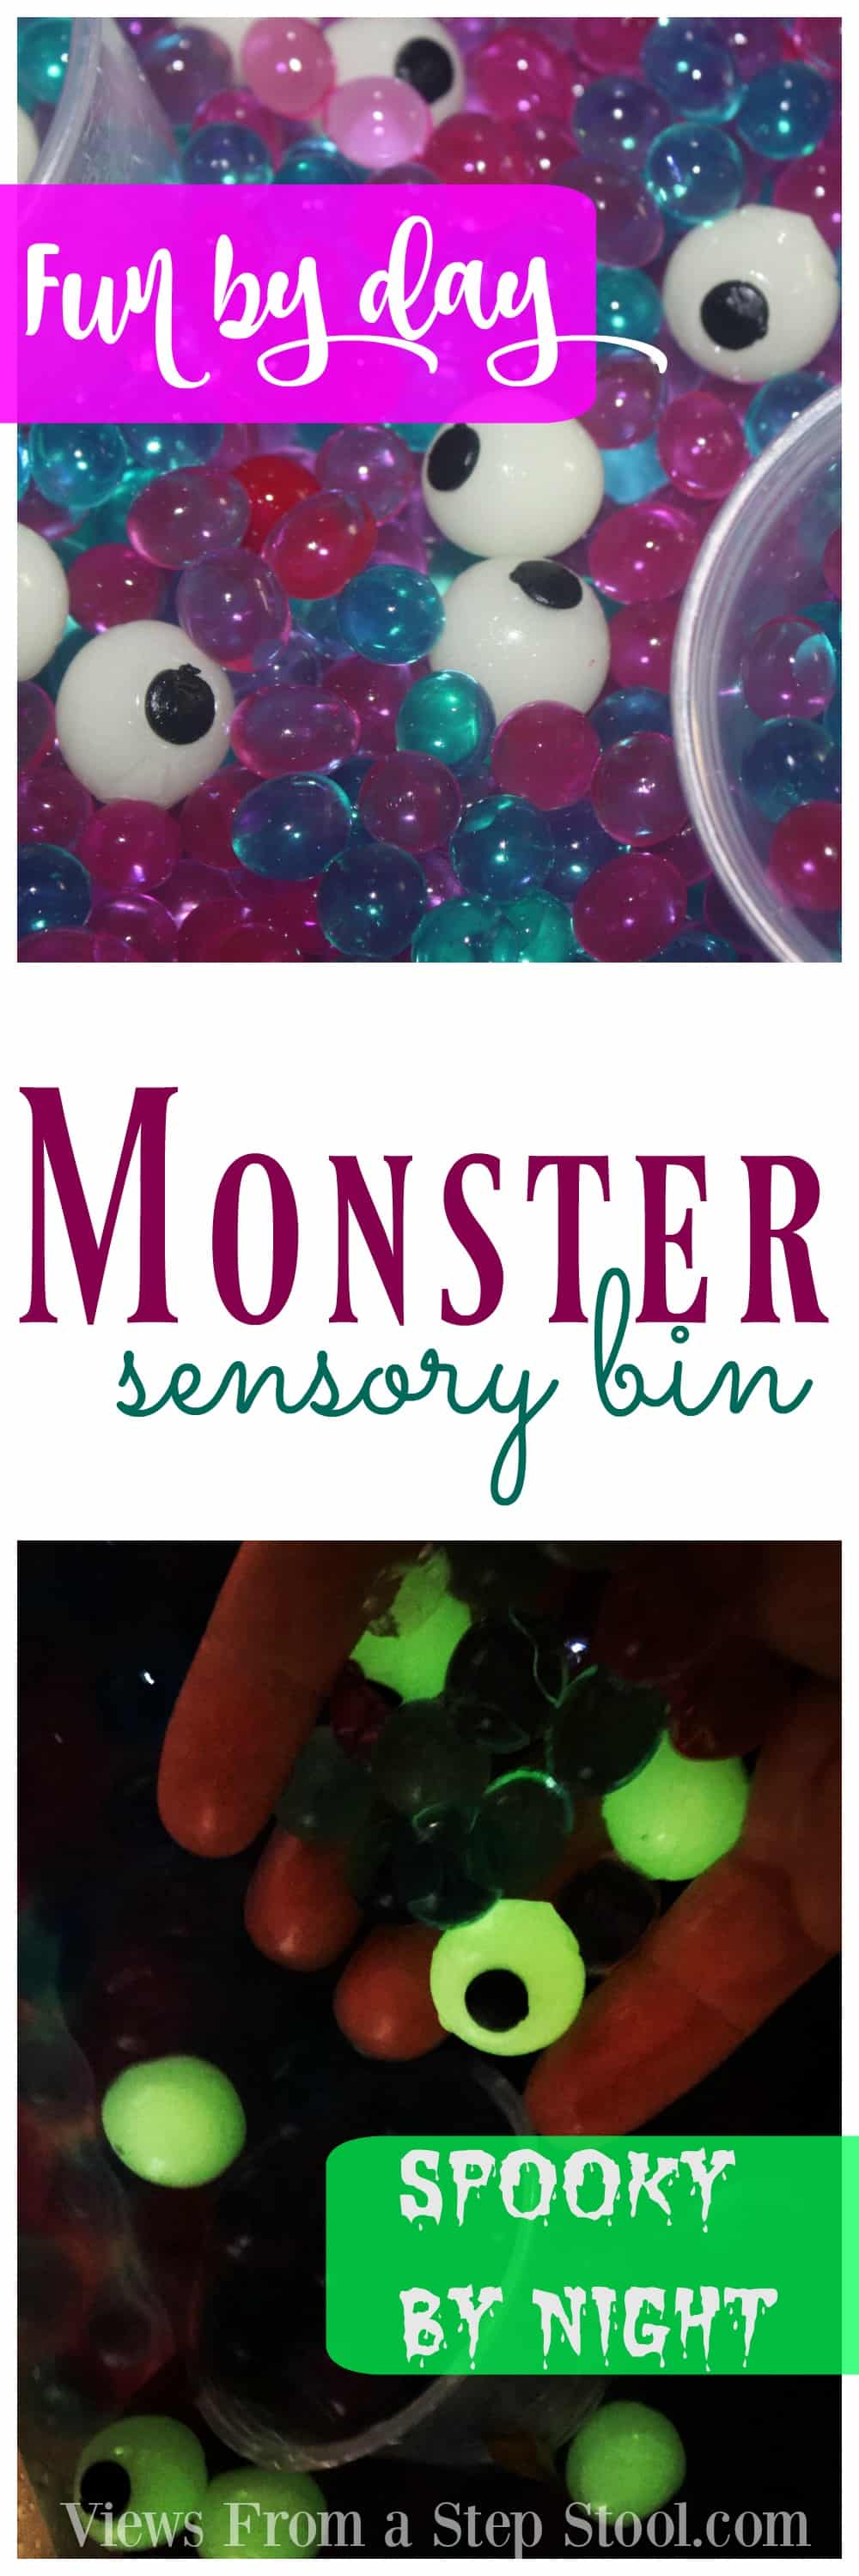 Monster Sensory Bin: Fun by Day, Spooky by Night